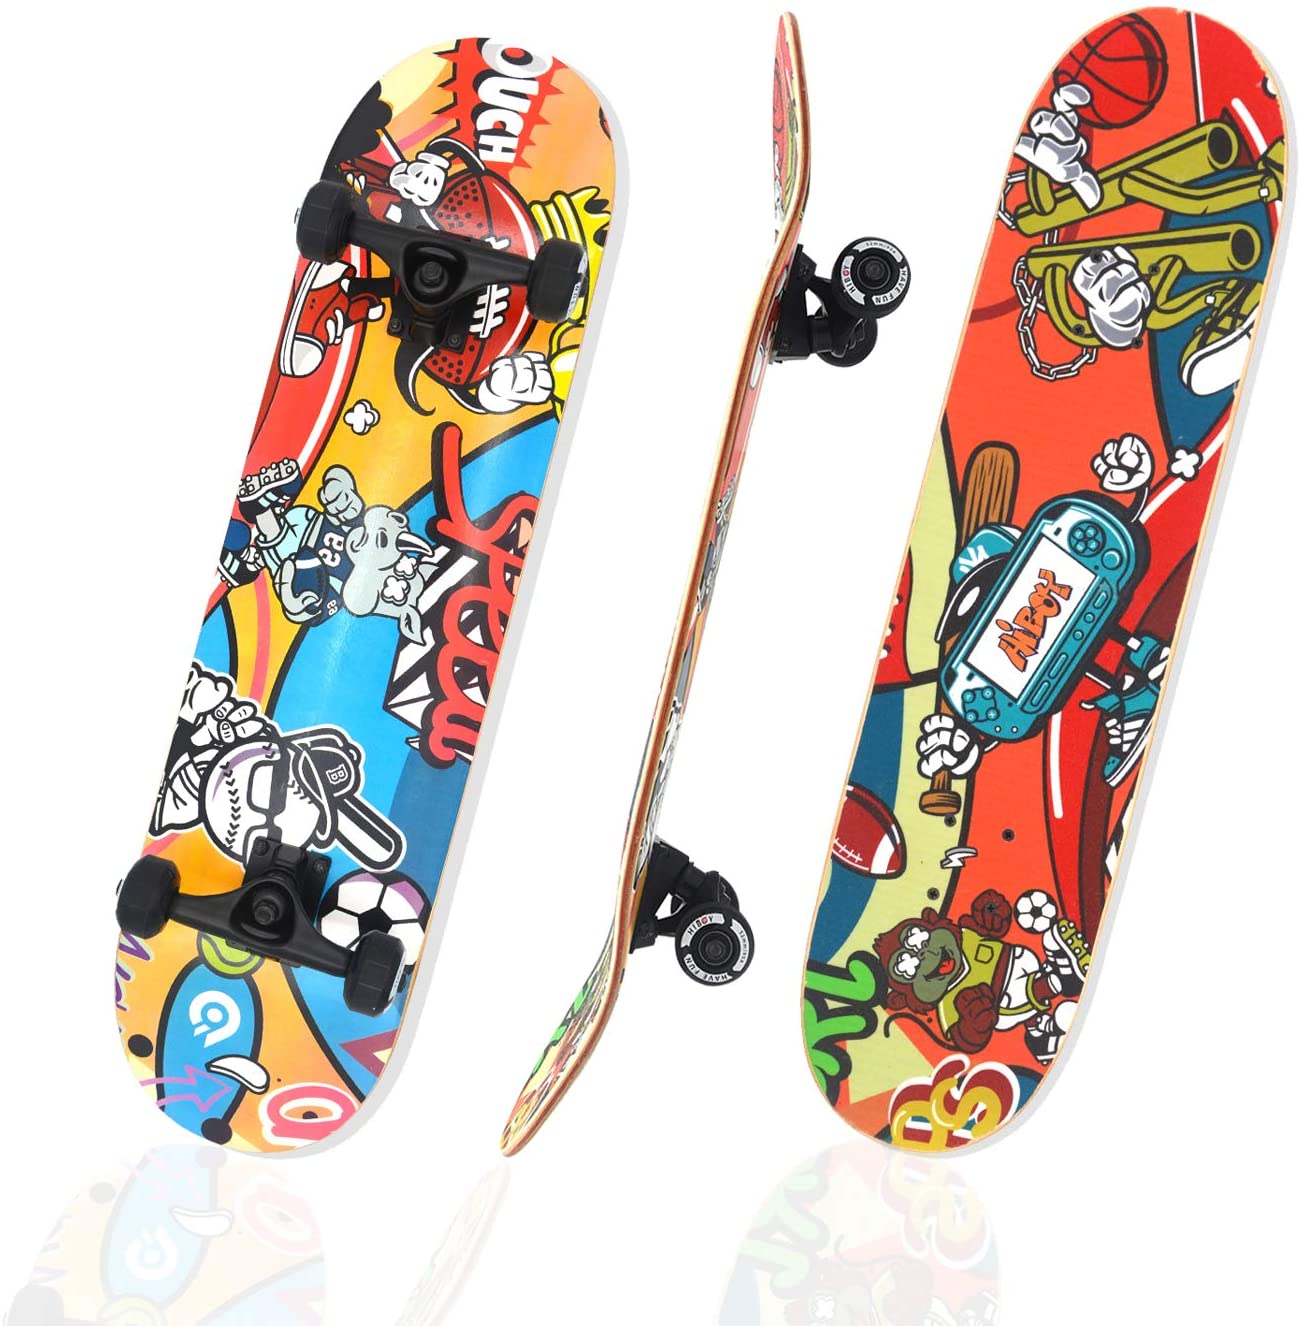 Hiboy Smooth Ride Wear-Resistant Skateboard, 31 x 8-Inch